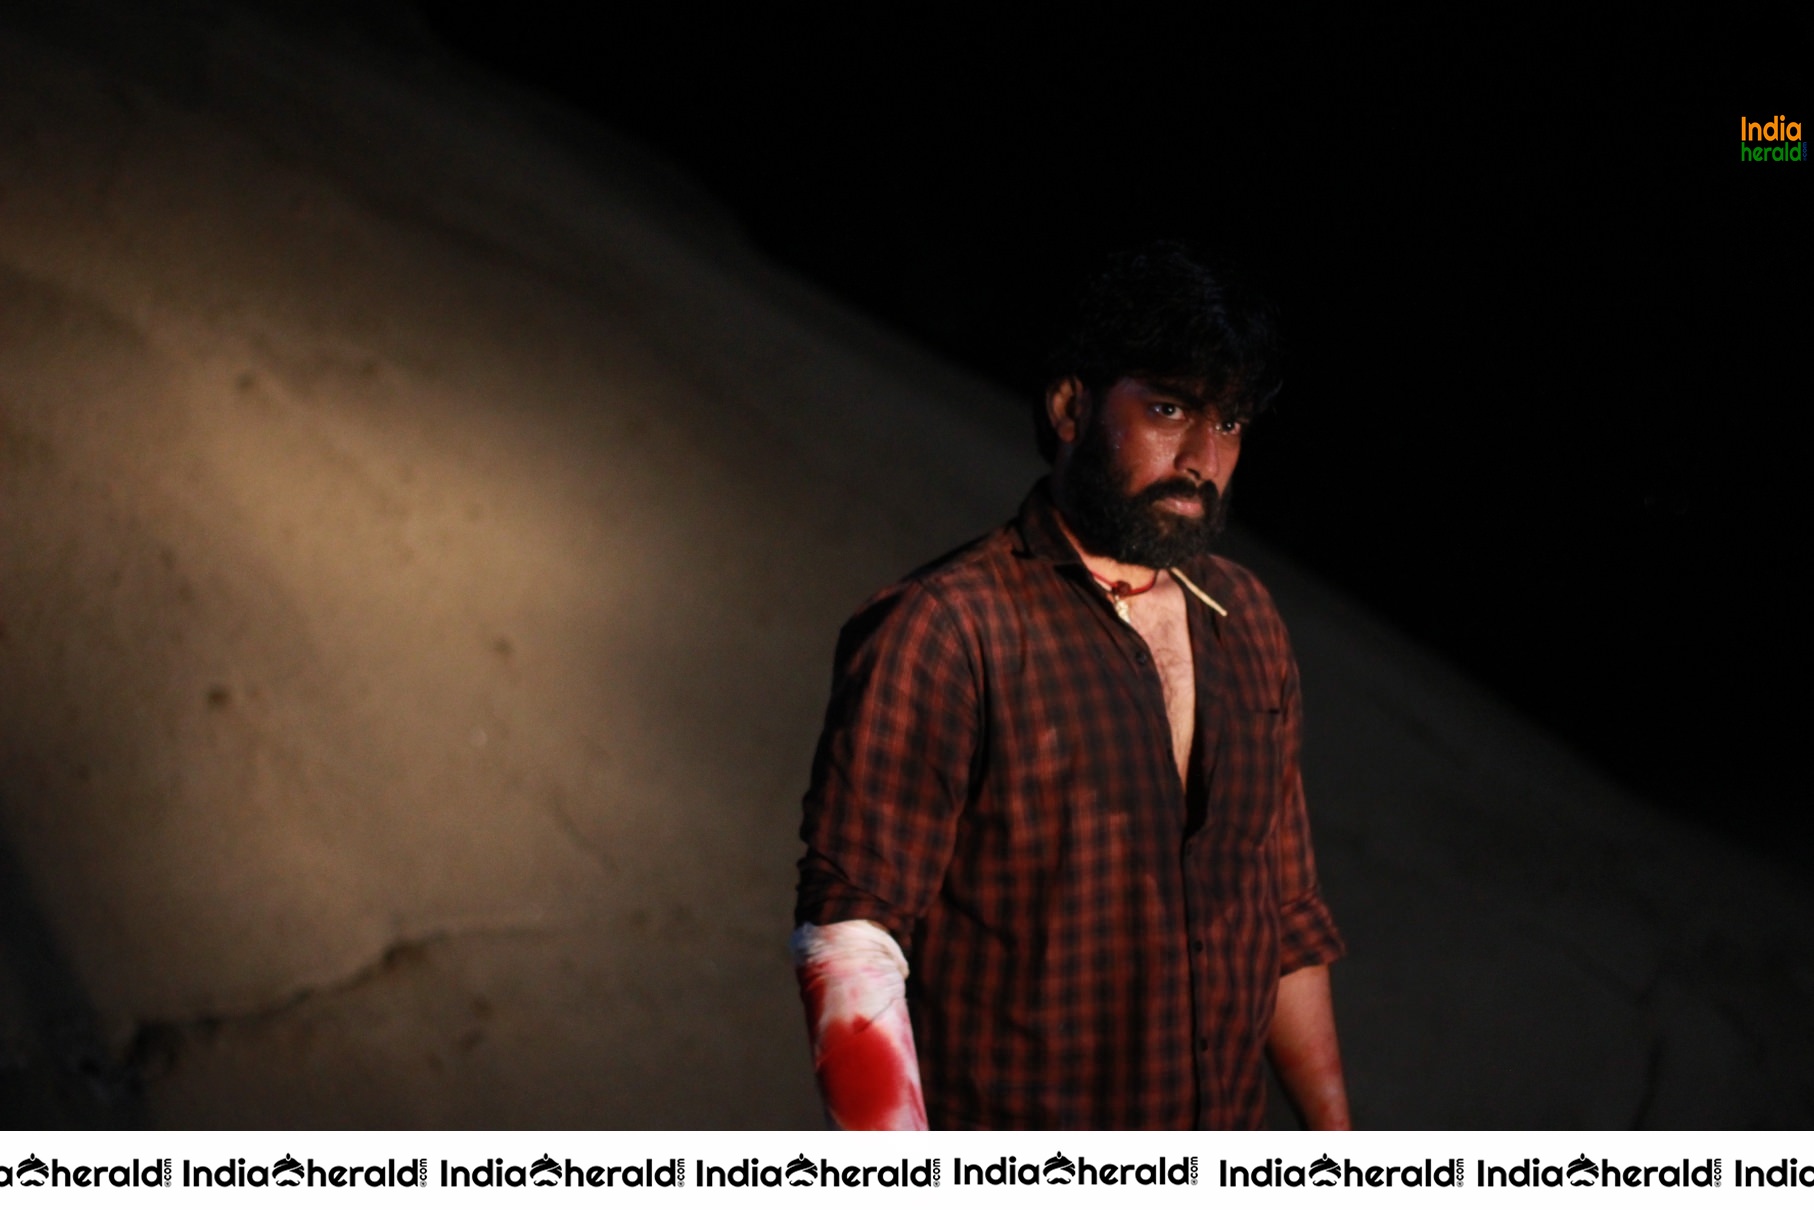 Actor Rakshit Stills from an upcoming Tamil Movie Set 2